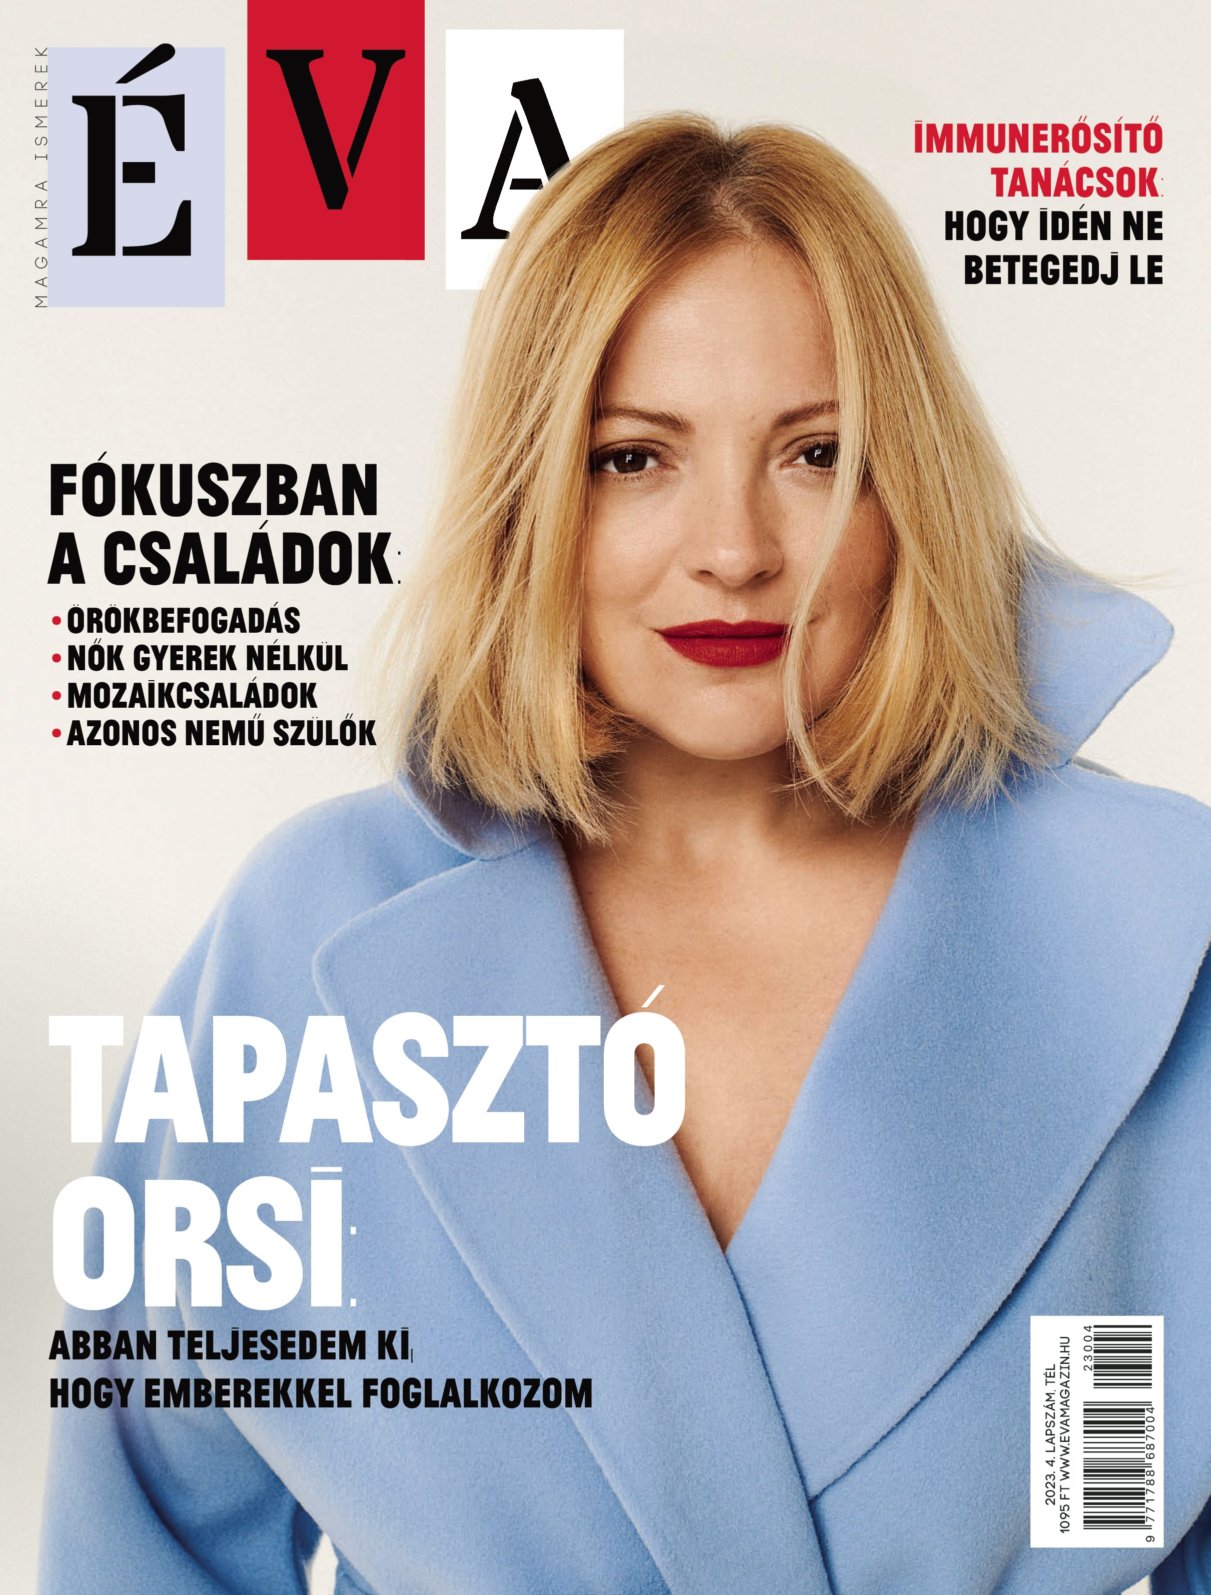 Magazine issue » Magazinly » Magazine issues